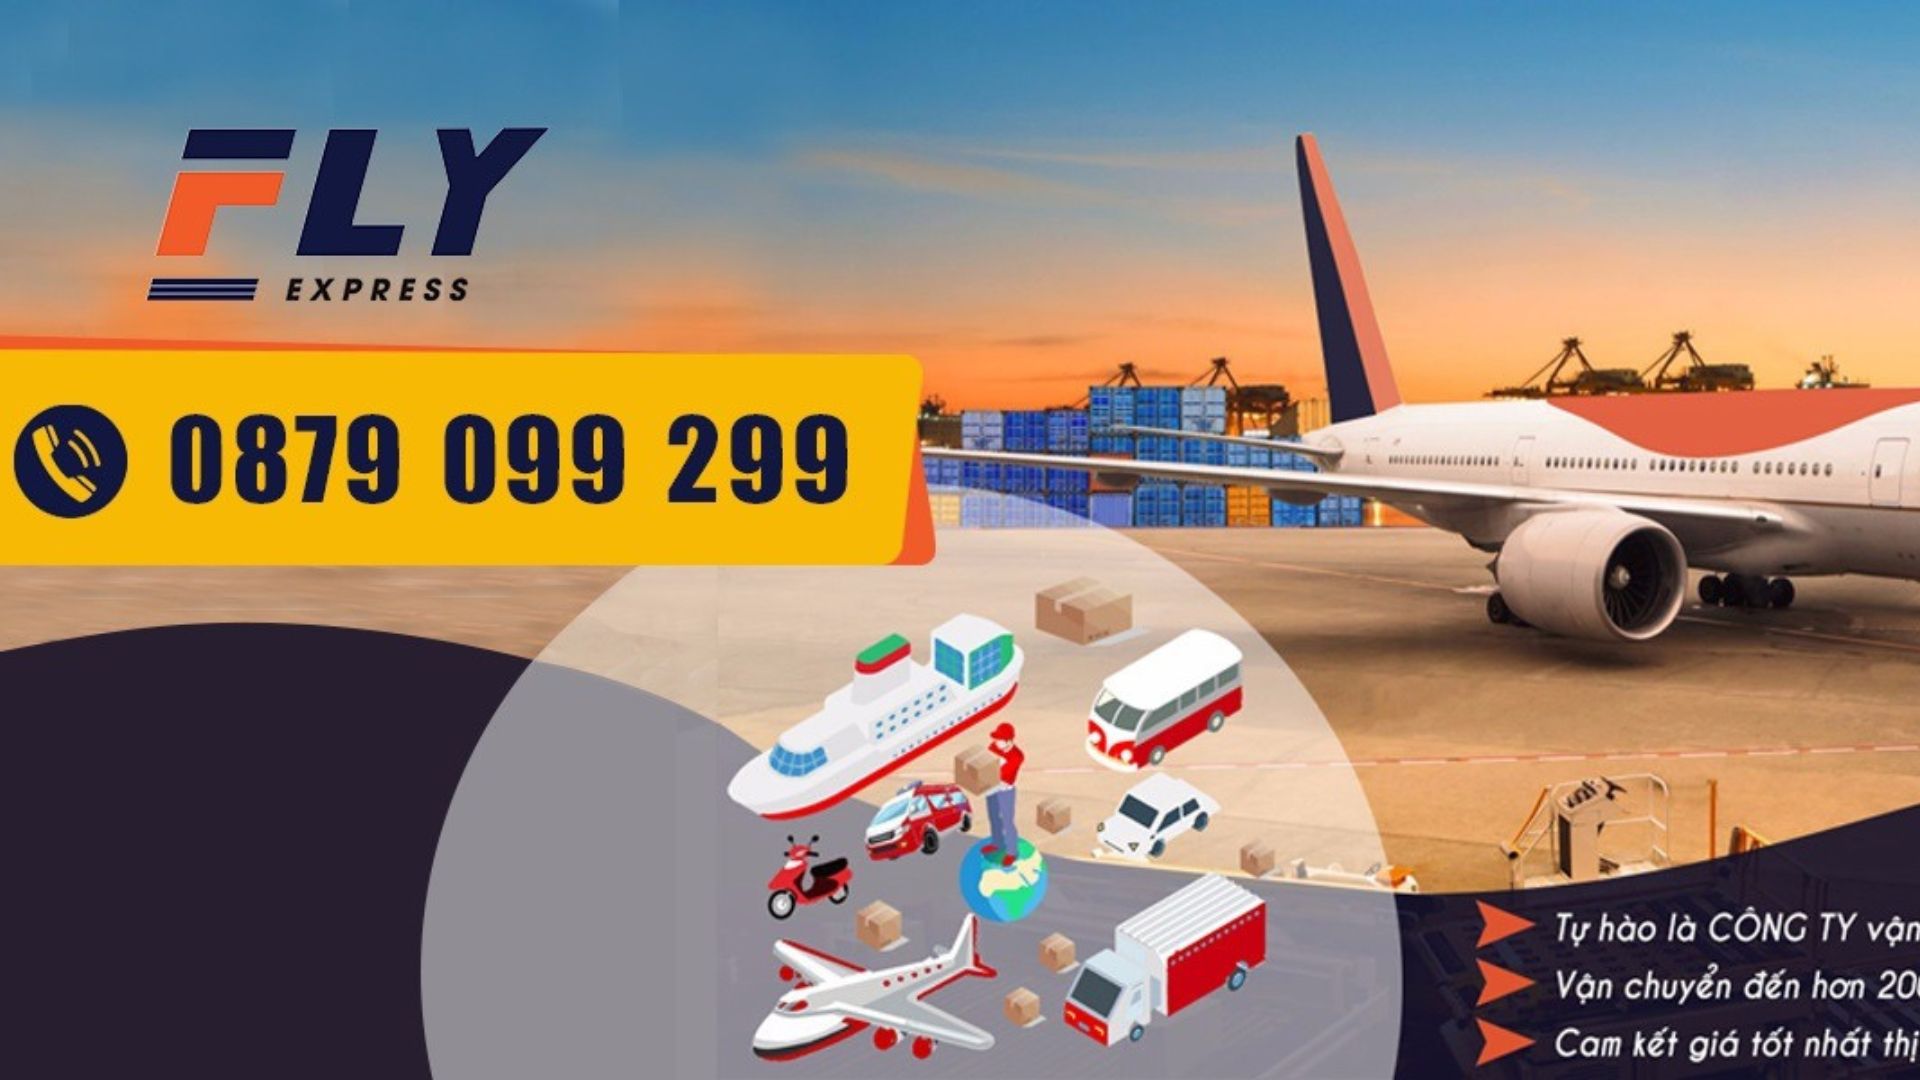 Công ty chuyển phát nhanh Fly Express - Ship hàng đi Mỹ tại Hà Nội giá rẻ 